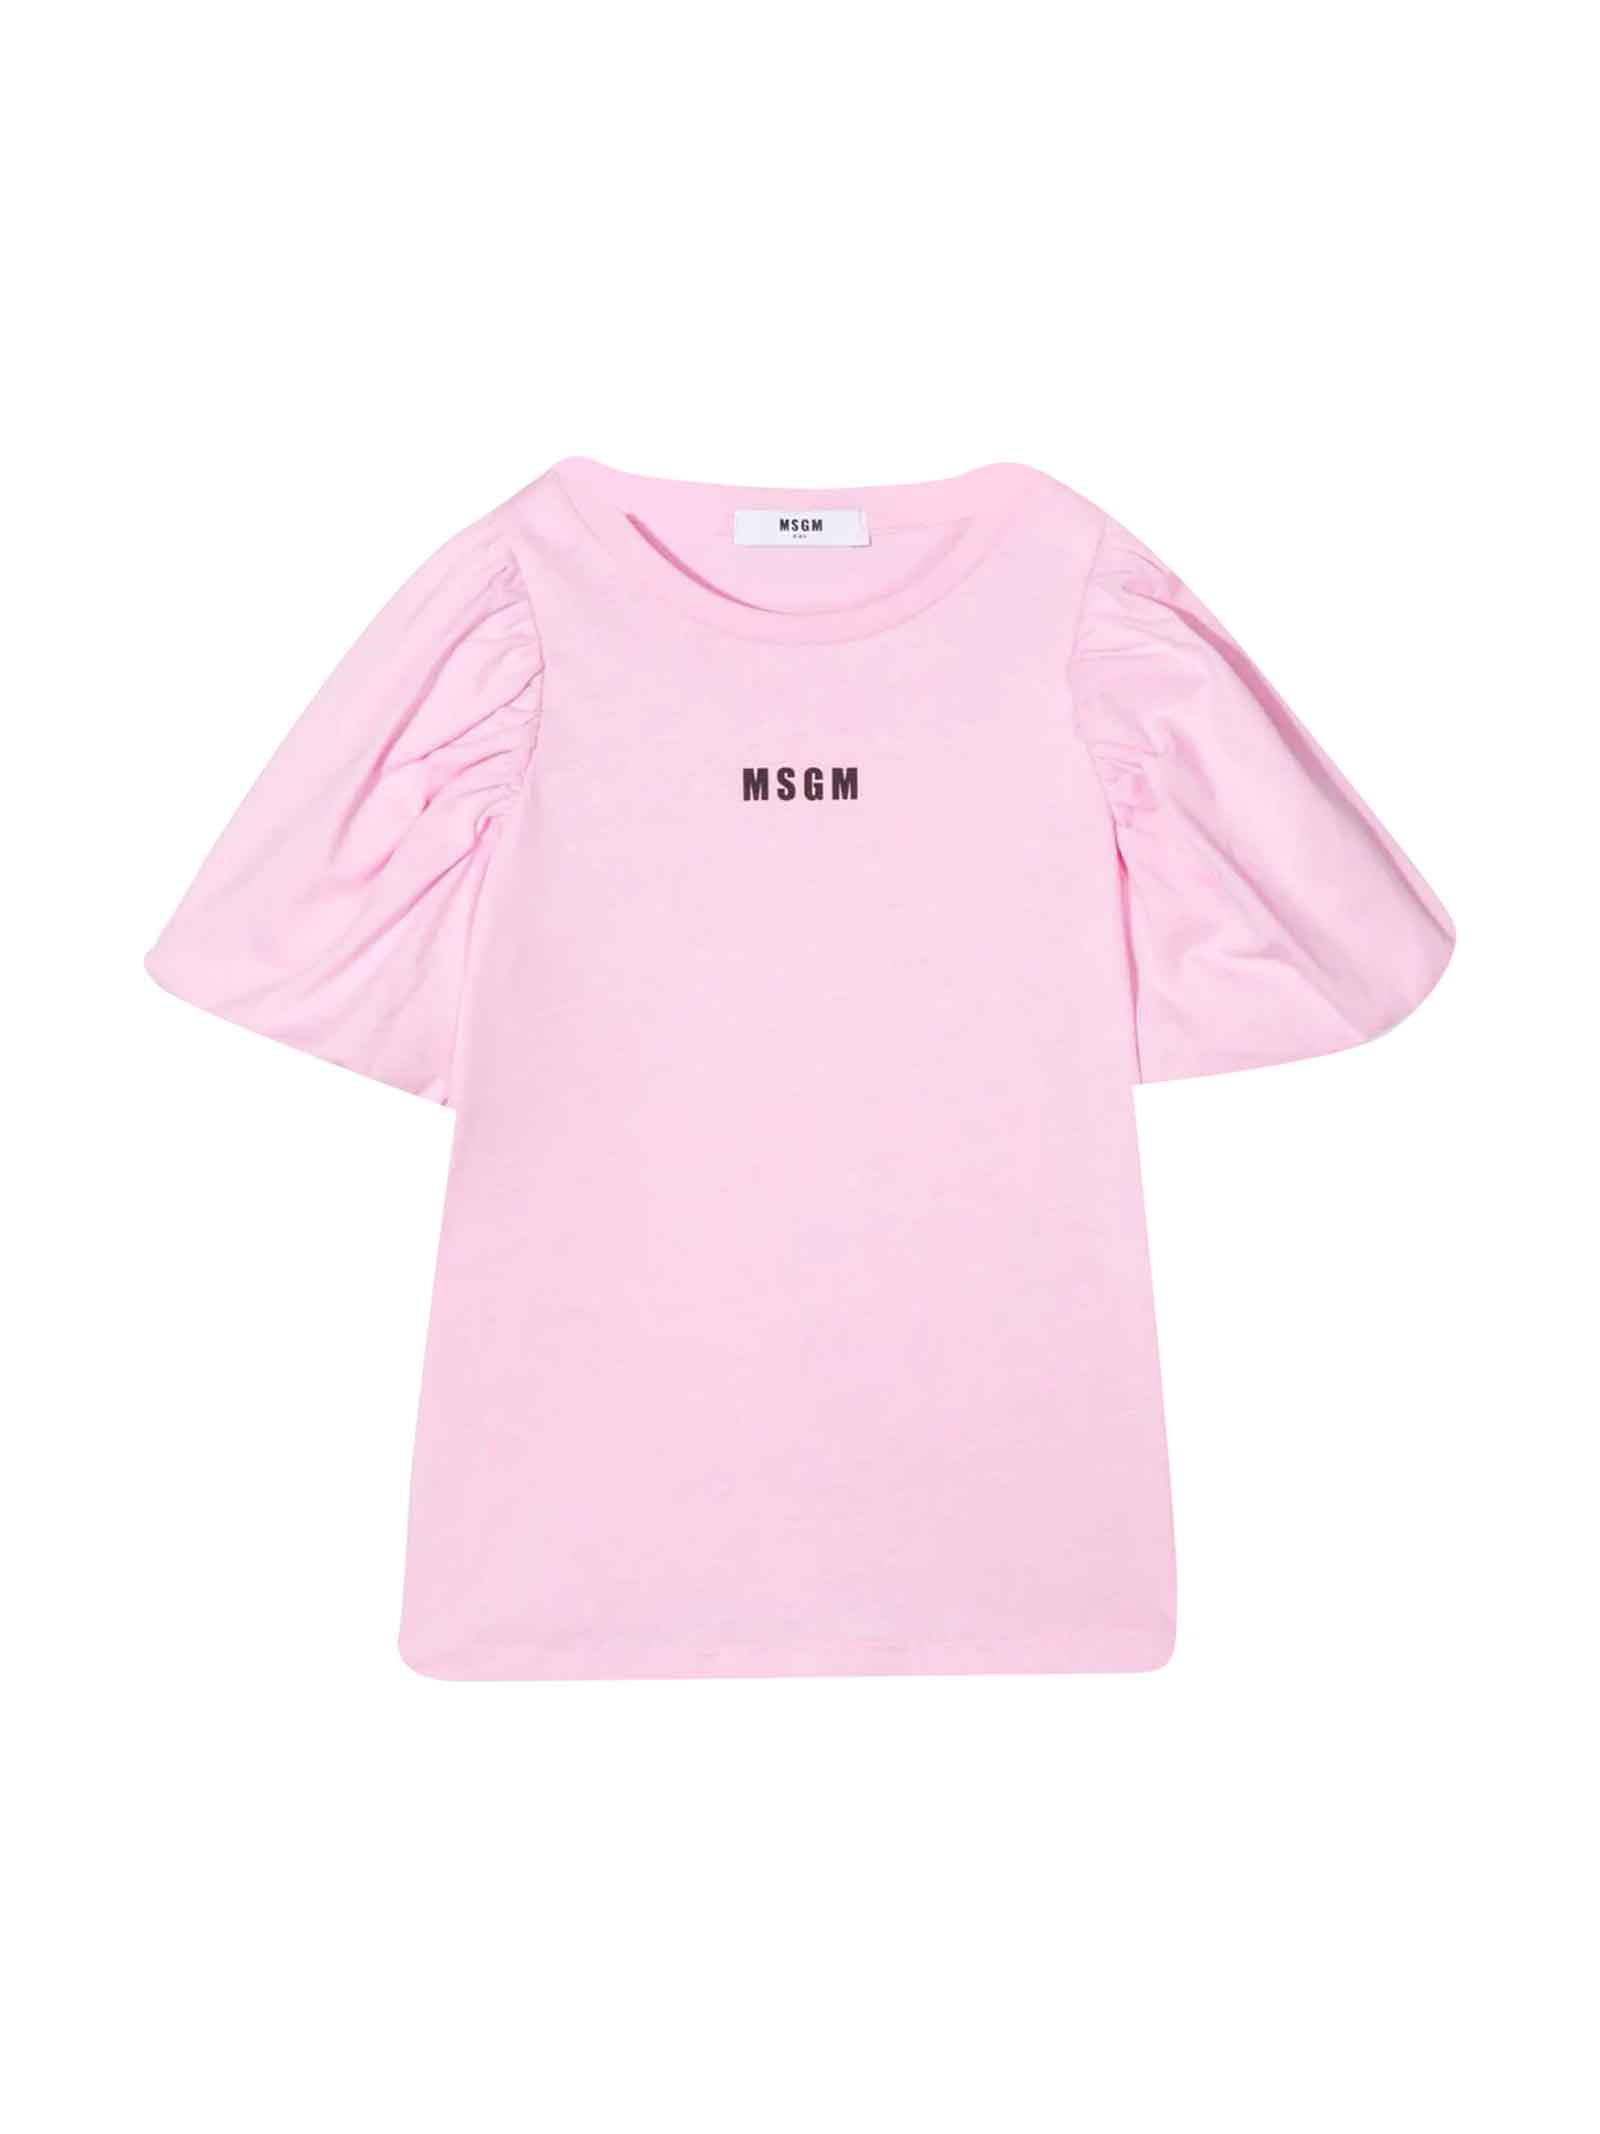 MSGM Girl Pink T-shirt